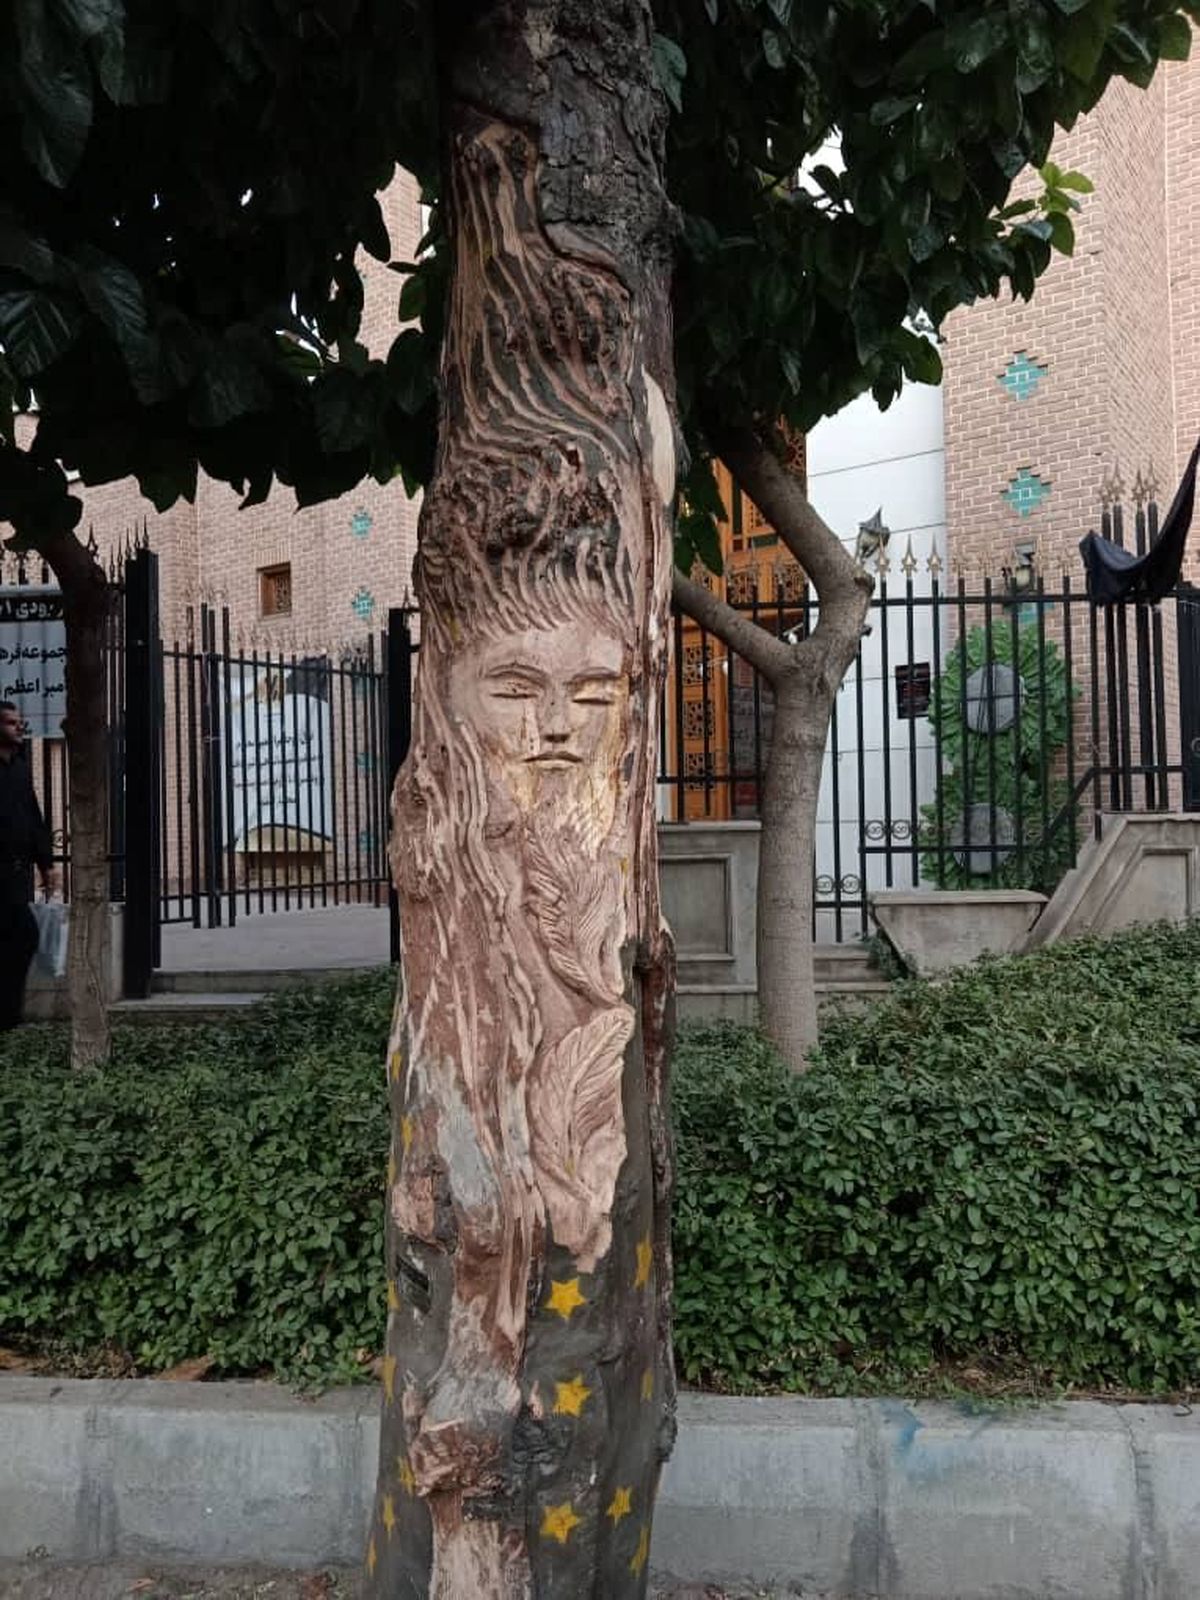 قطع یک درخت ۱۰۰ ساله  به خاطر نقش زن روی آن!+عکس